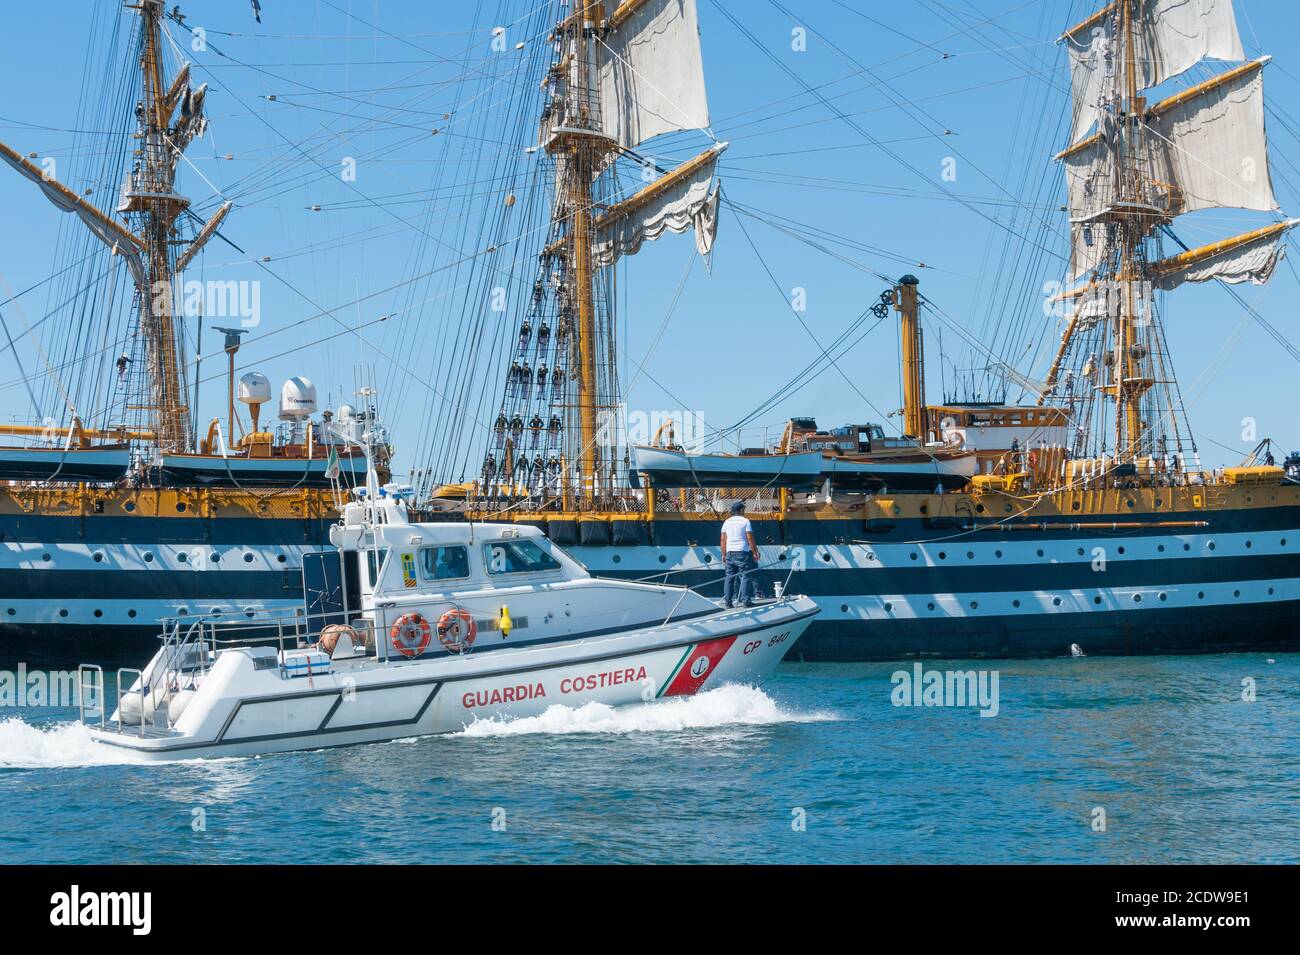 Patrol boat approach the training ship of the Italian Navy 'AMERIGO VESPUCCI' in the harbour of Taranto, Italy Stock Photo